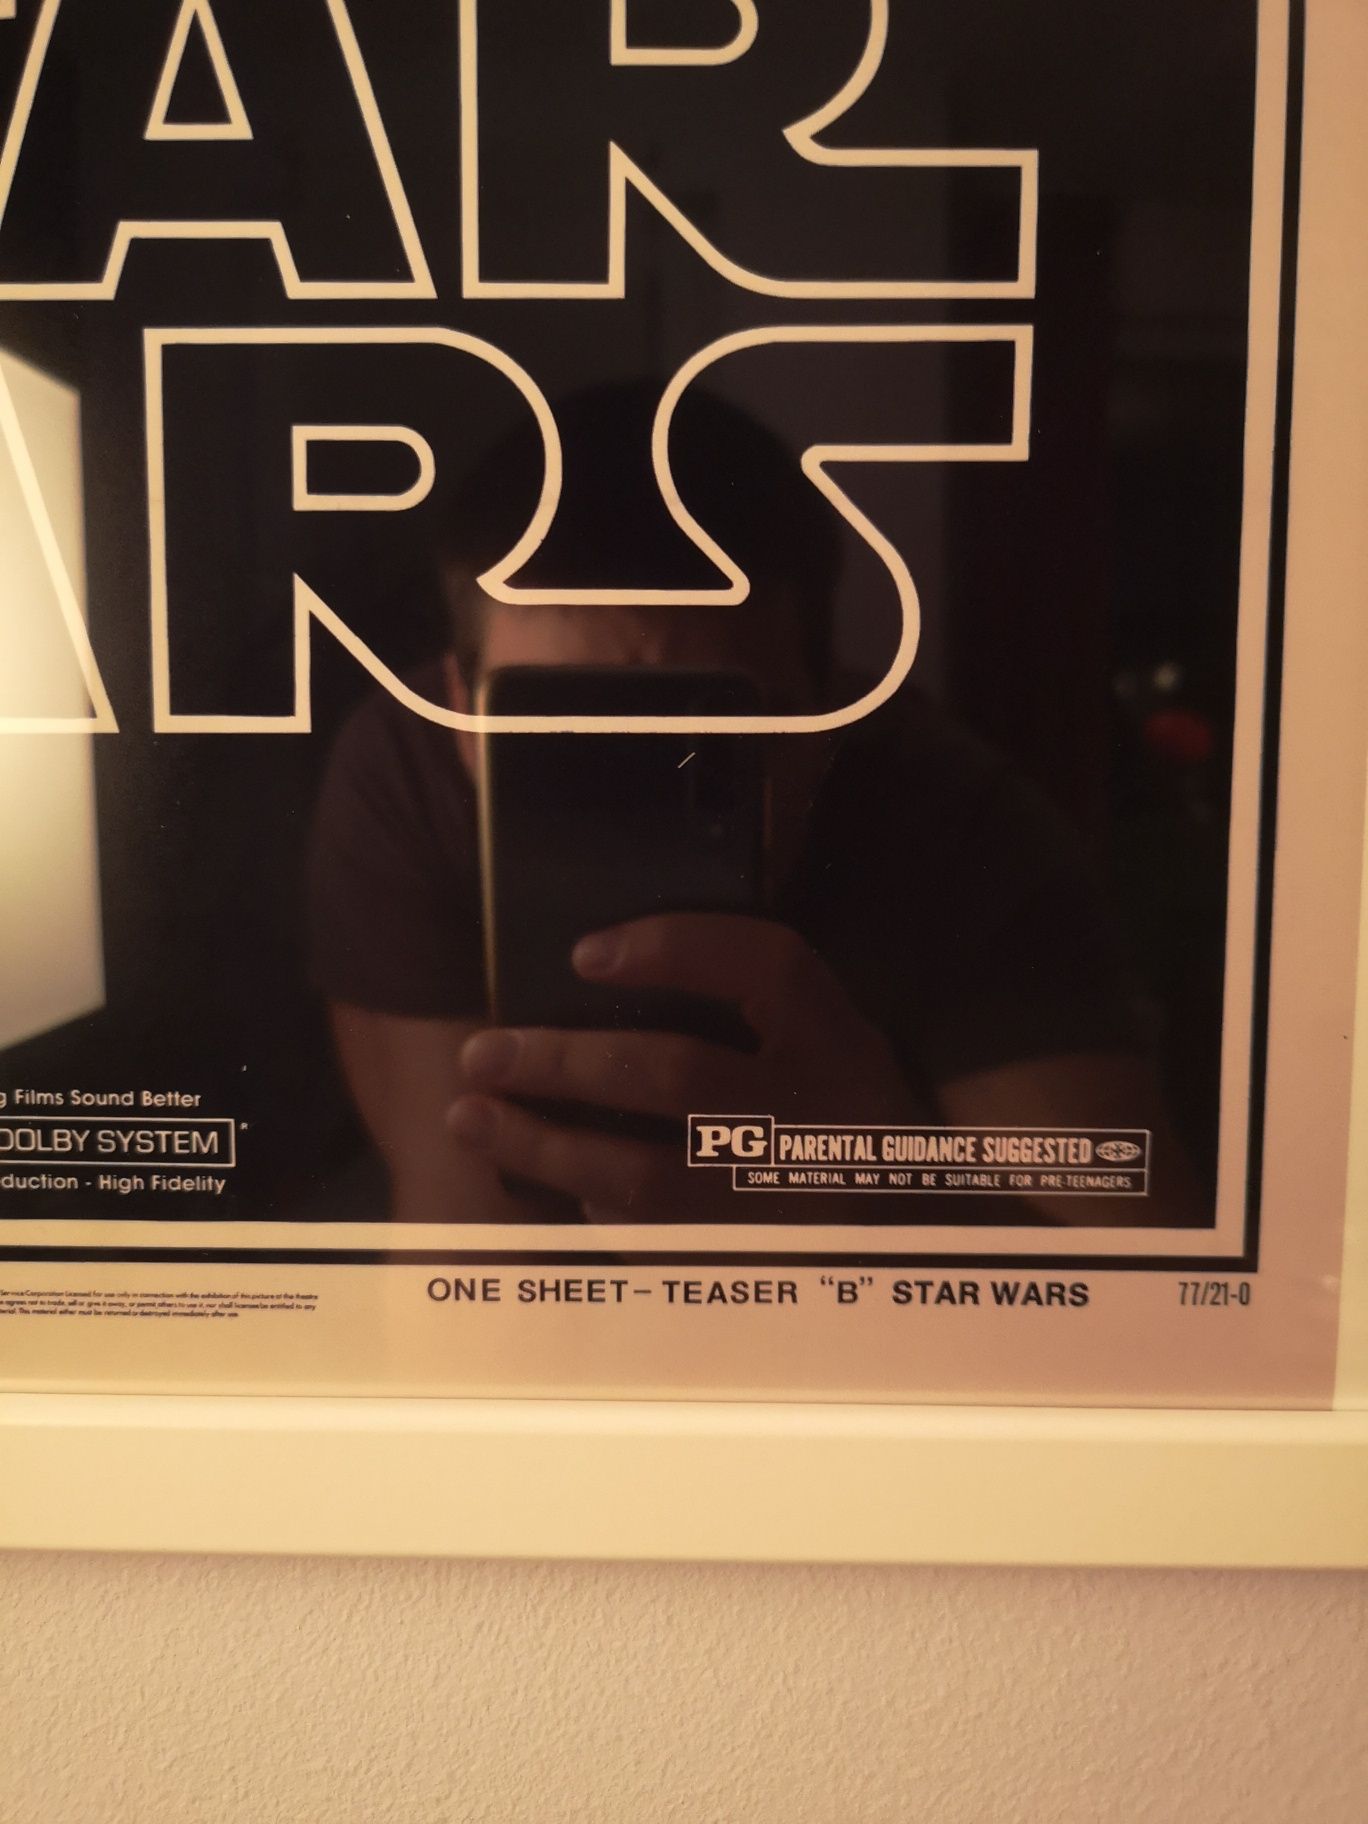 Vintage Ретро Постер Star Wars с рамка IKEA 50/40см